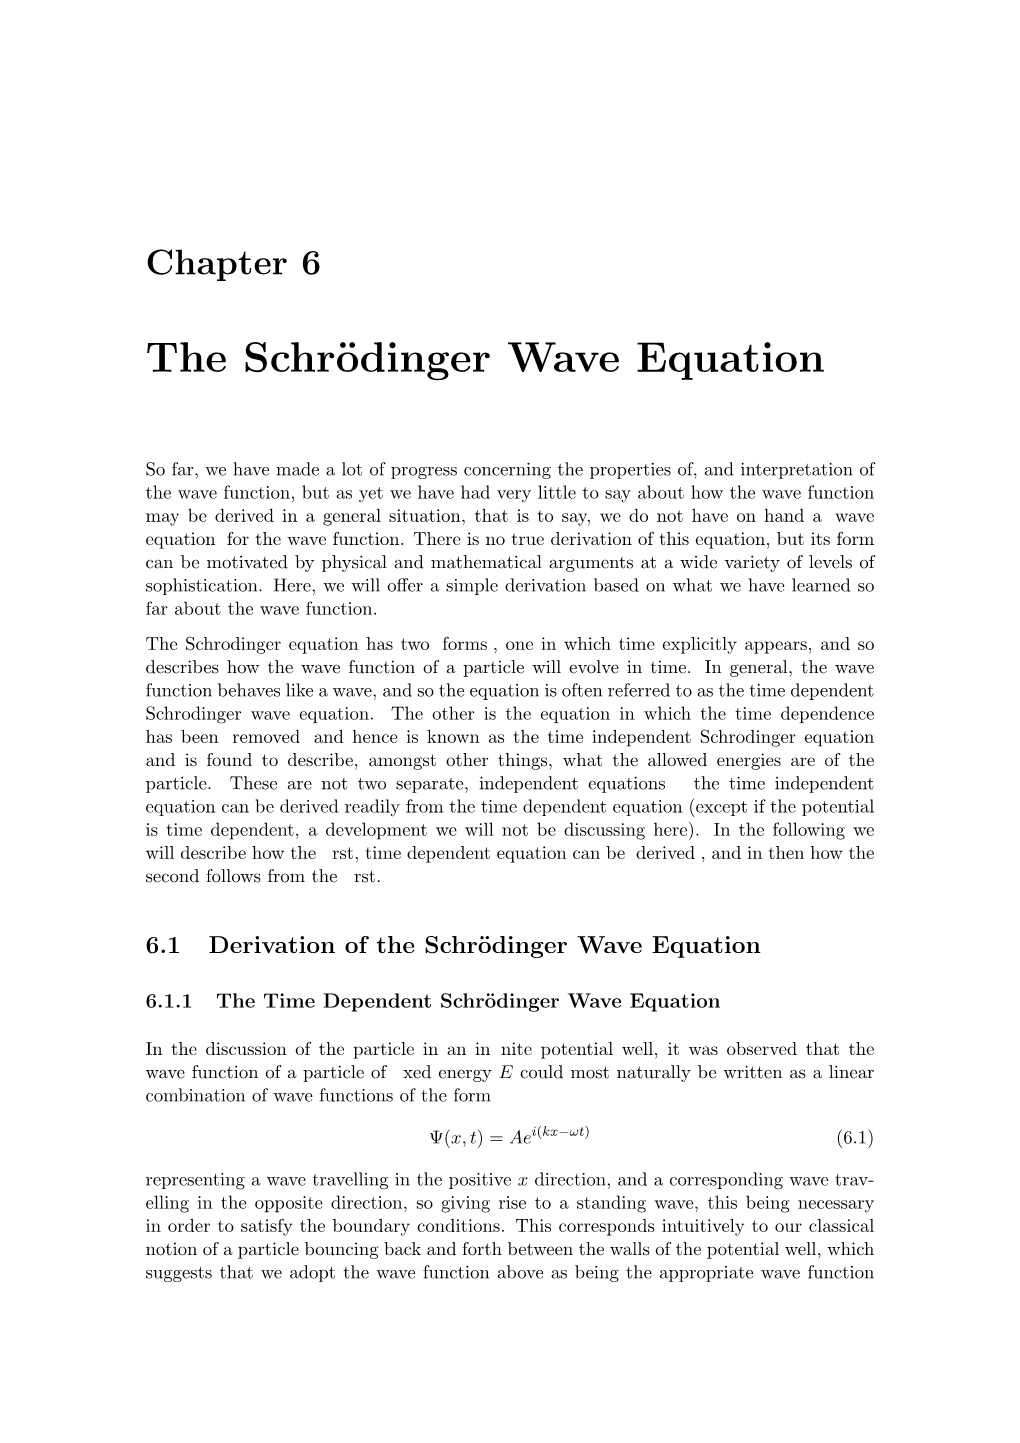 The Schrödinger Wave Equation